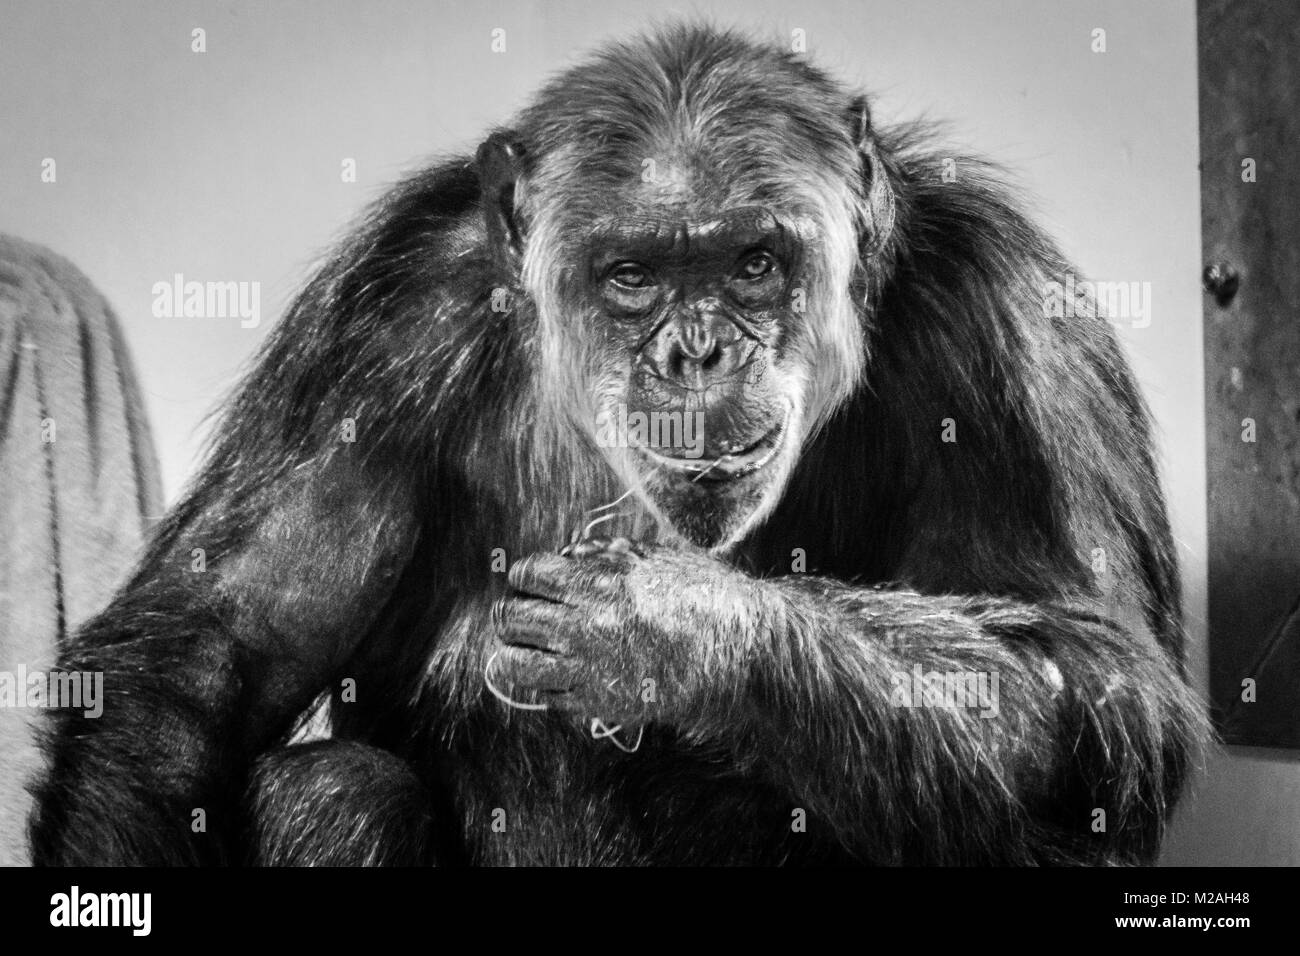 Le chimpanzé à regarder la caméra, tourné en noir et blanc Banque D'Images